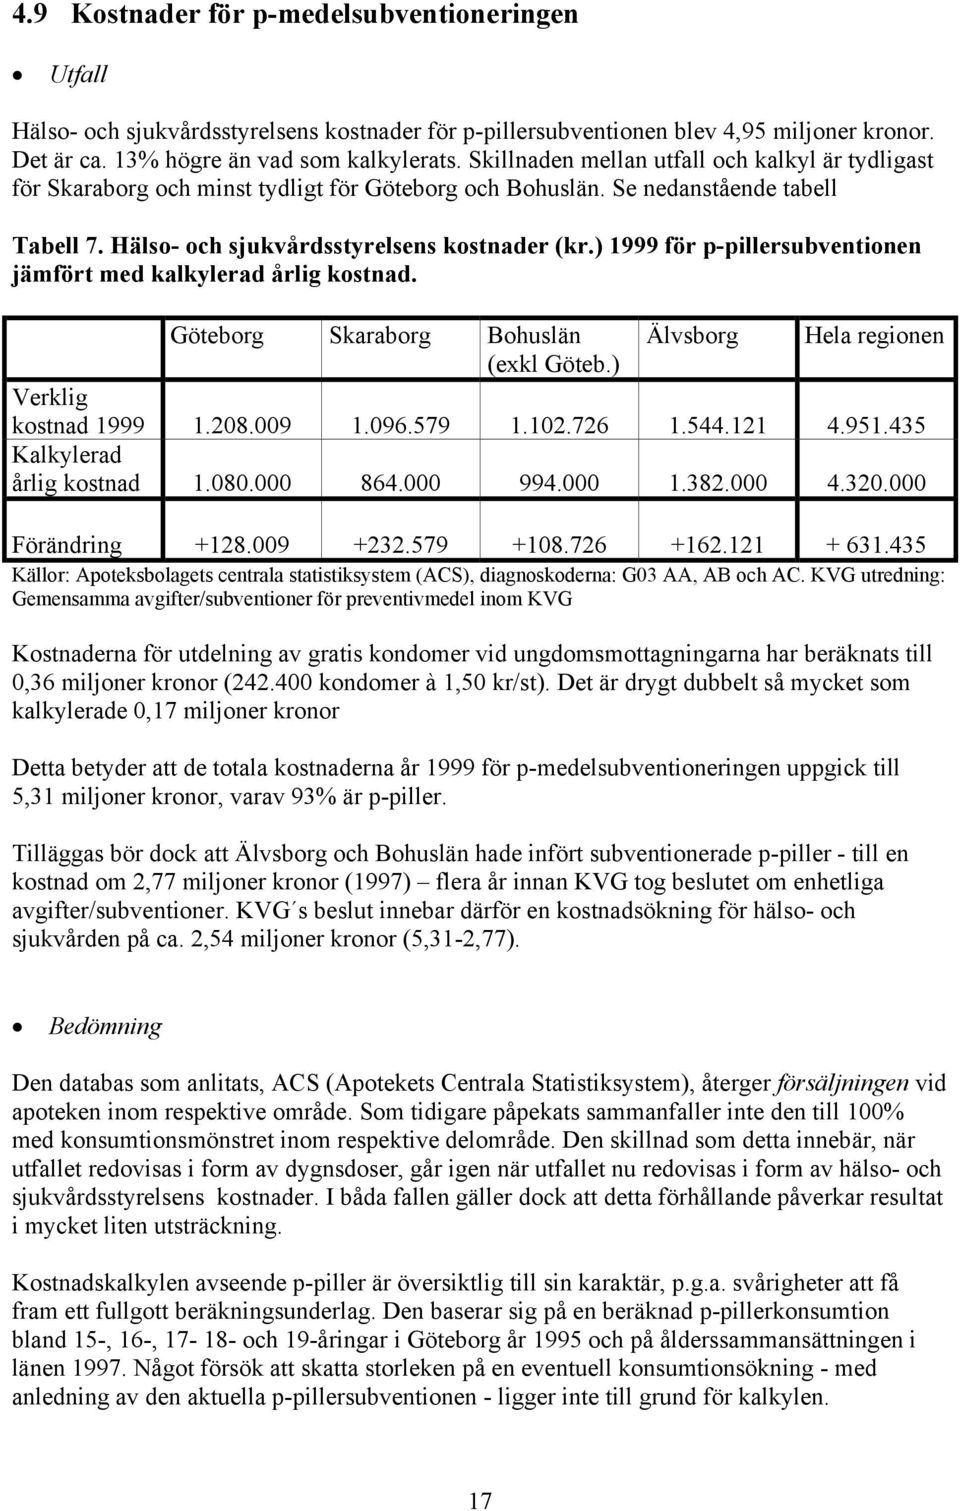 ) 1999 för p-pillersubventionen jämfört med kalkylerad årlig kostnad. Göteborg Skaraborg Bohuslän Älvsborg Hela regionen (exkl Göteb.) Verklig kostnad 1999 1.208.009 1.096.579 1.102.726 1.544.121 4.